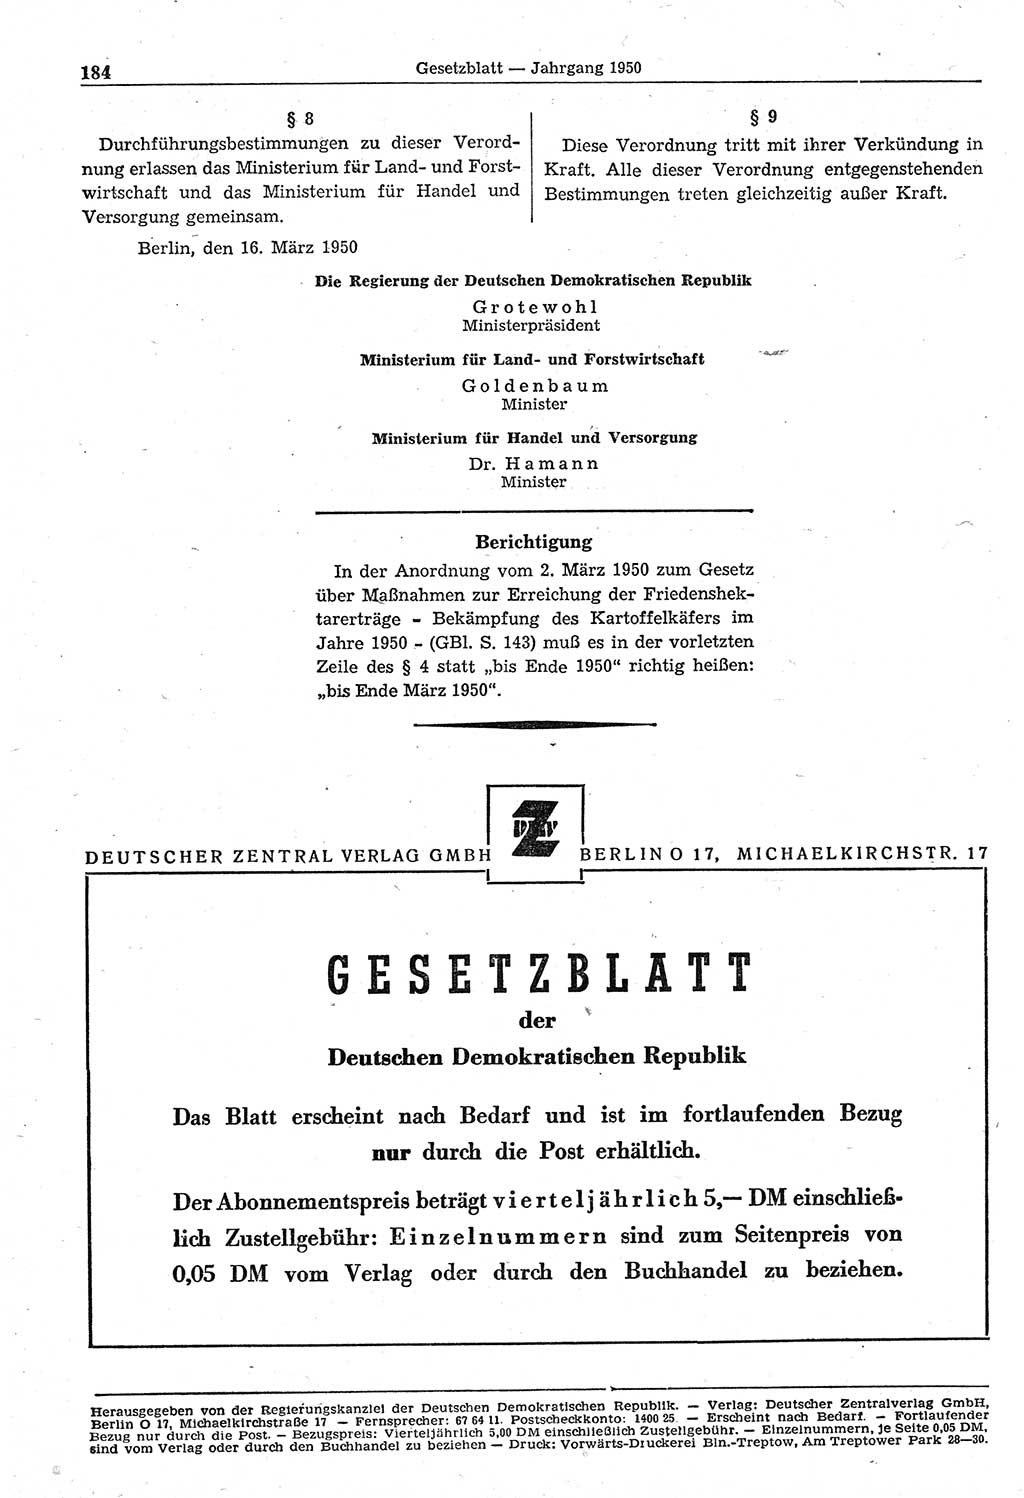 Gesetzblatt (GBl.) der Deutschen Demokratischen Republik (DDR) 1950, Seite 184 (GBl. DDR 1950, S. 184)